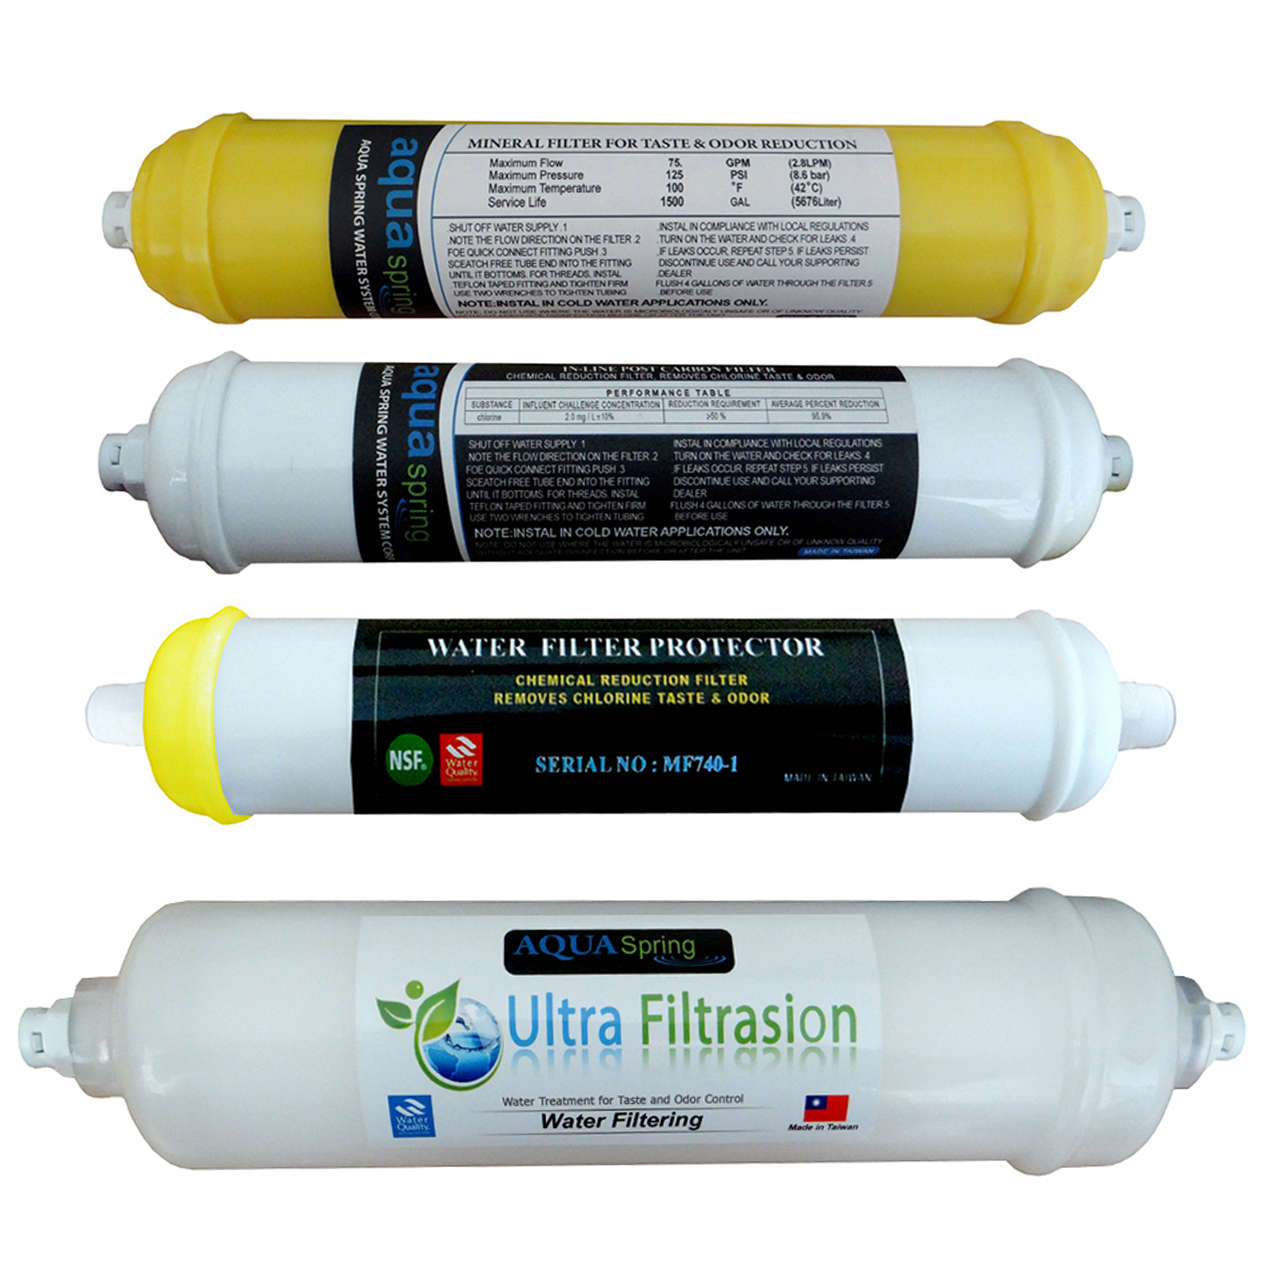 فیلتر دستگاه تصفیه کننده آب مدل SPARE FILTER - 4F مجموعه 4 عددی